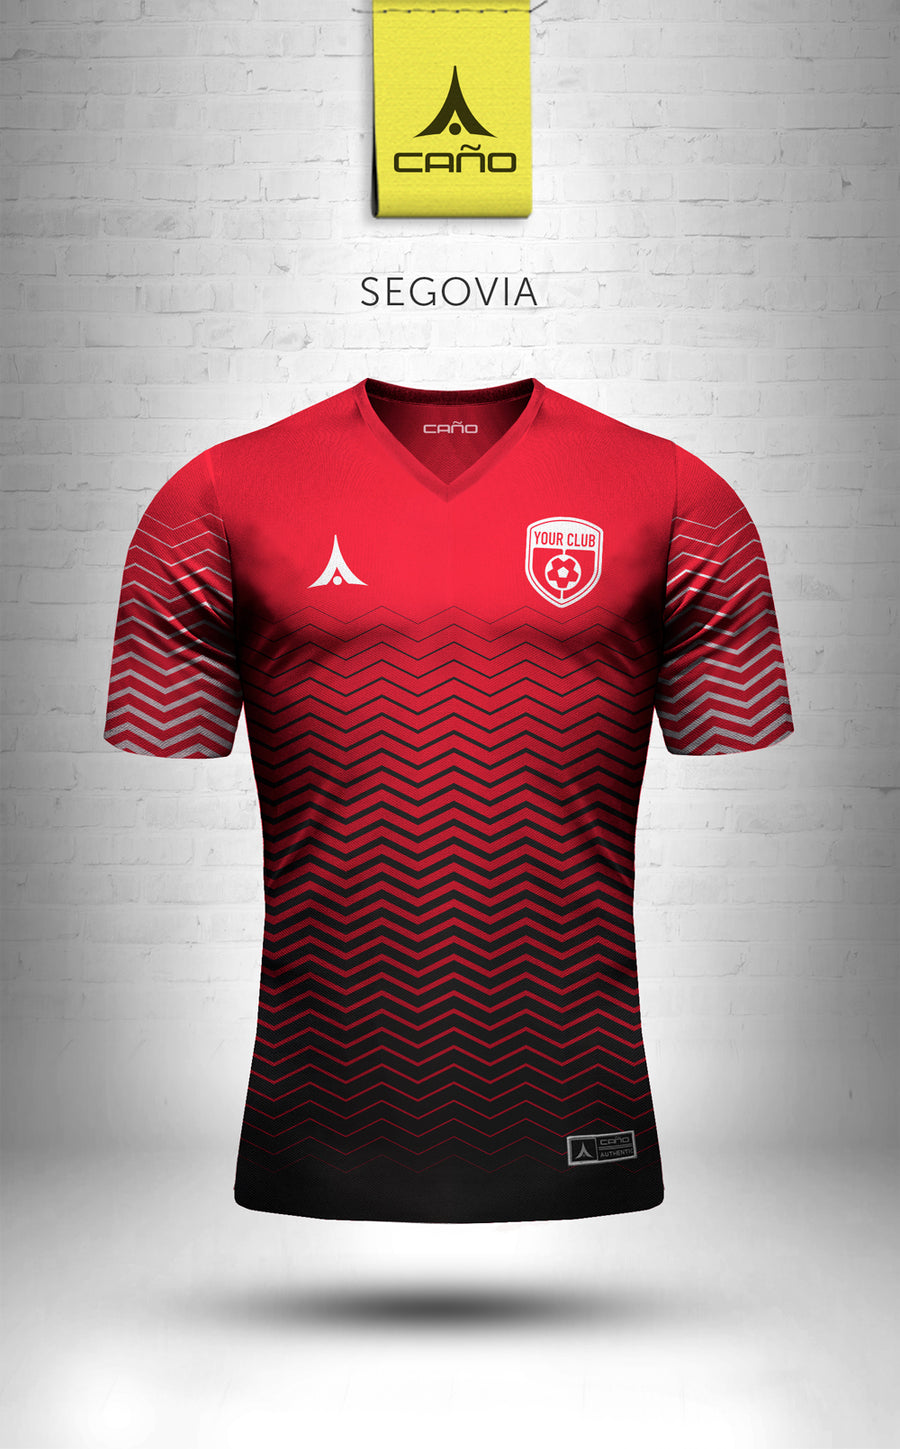 Segovia in red/white/black